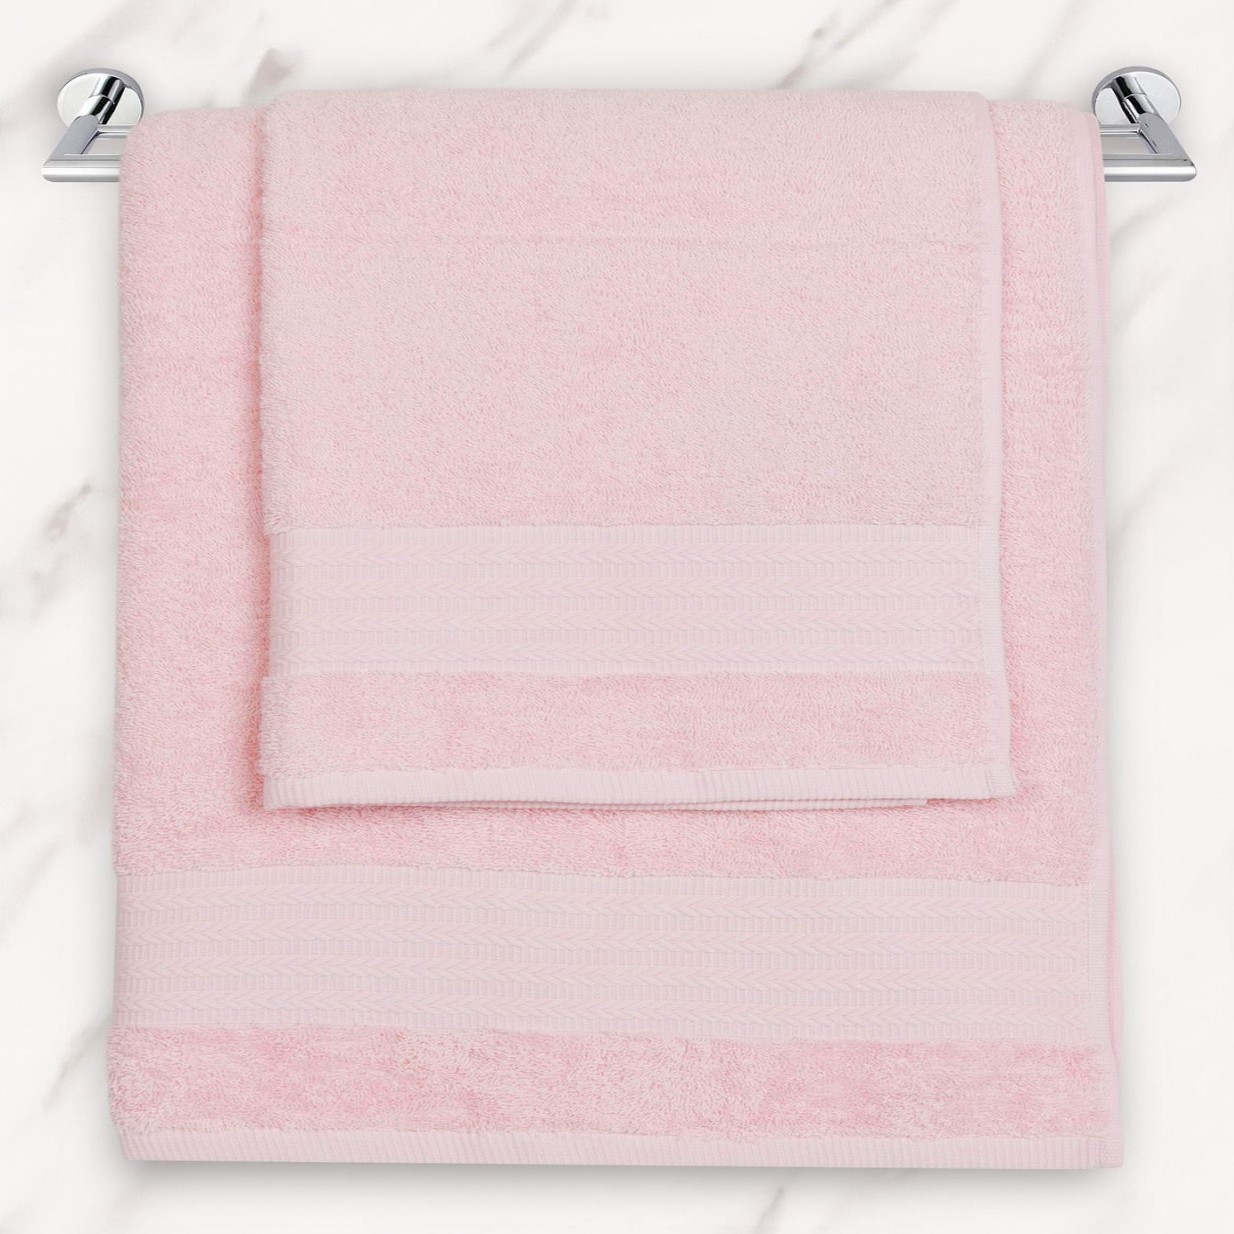 Полотенце Ashby цвет: розовый (50х70 см), размер 50х70 см sofi753858 Полотенце Ashby цвет: розовый (50х70 см) - фото 1